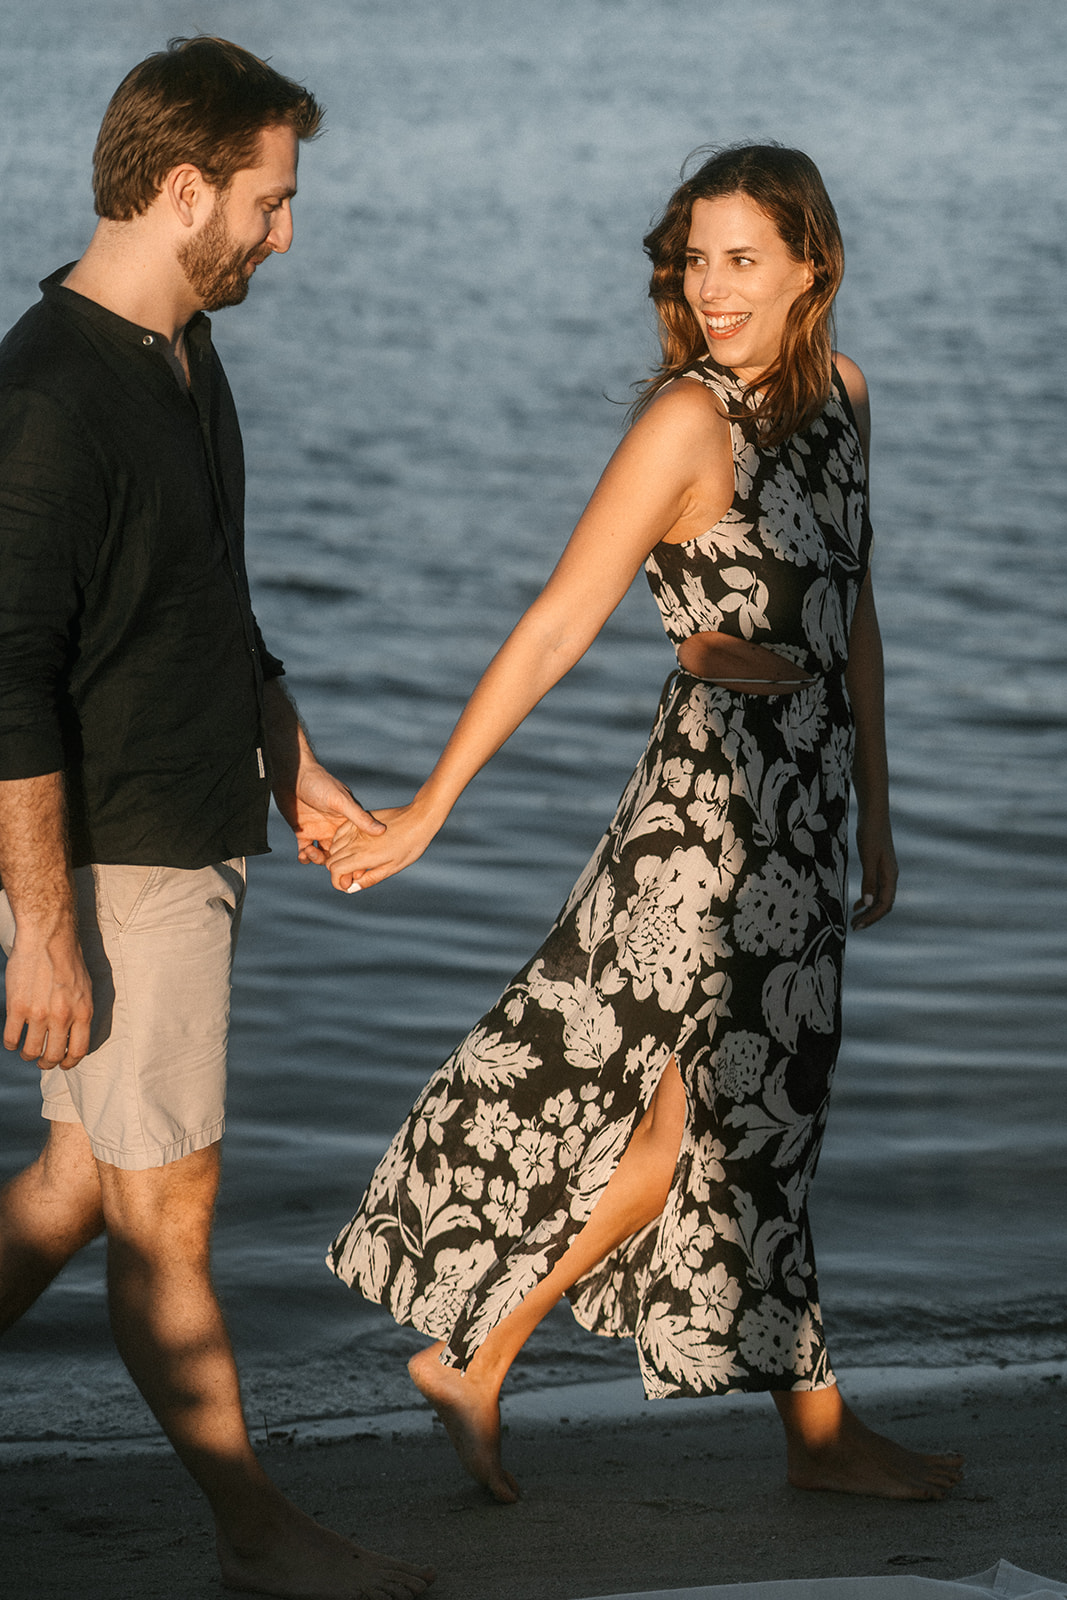 A couple taking a romantic walk in Miami Beach.